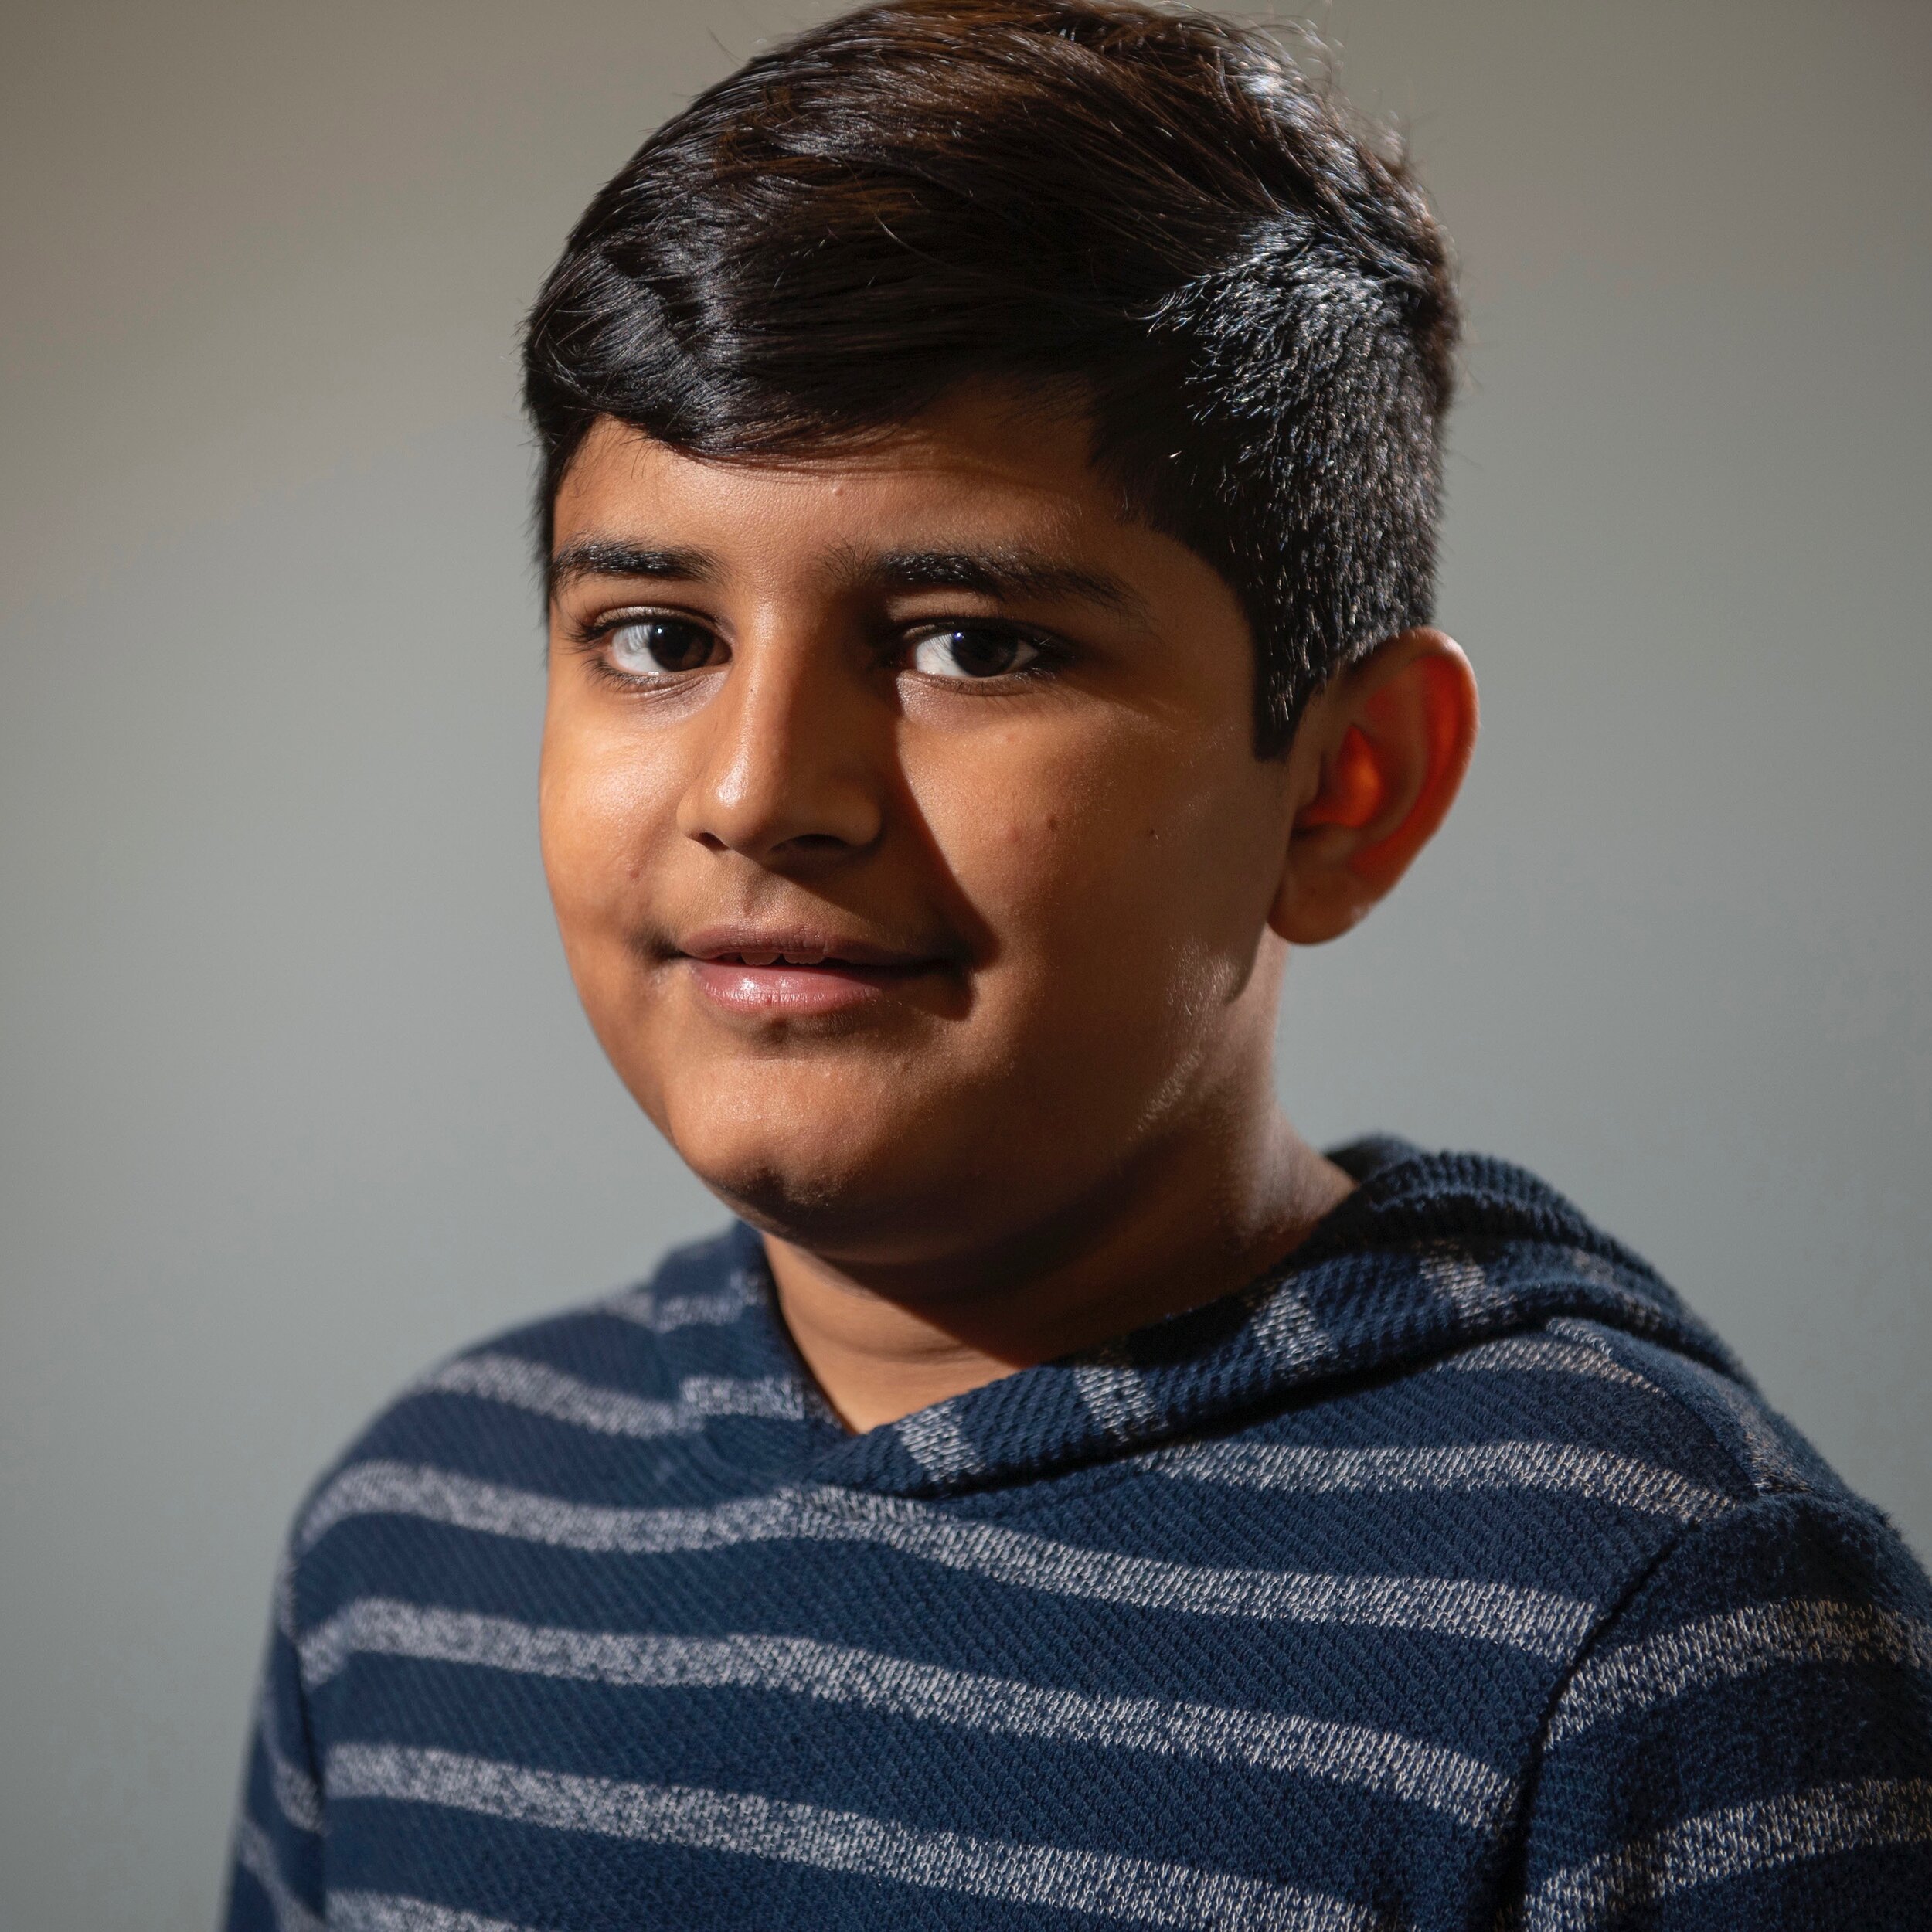 Mikaeel, 13, from Mississauga, ON